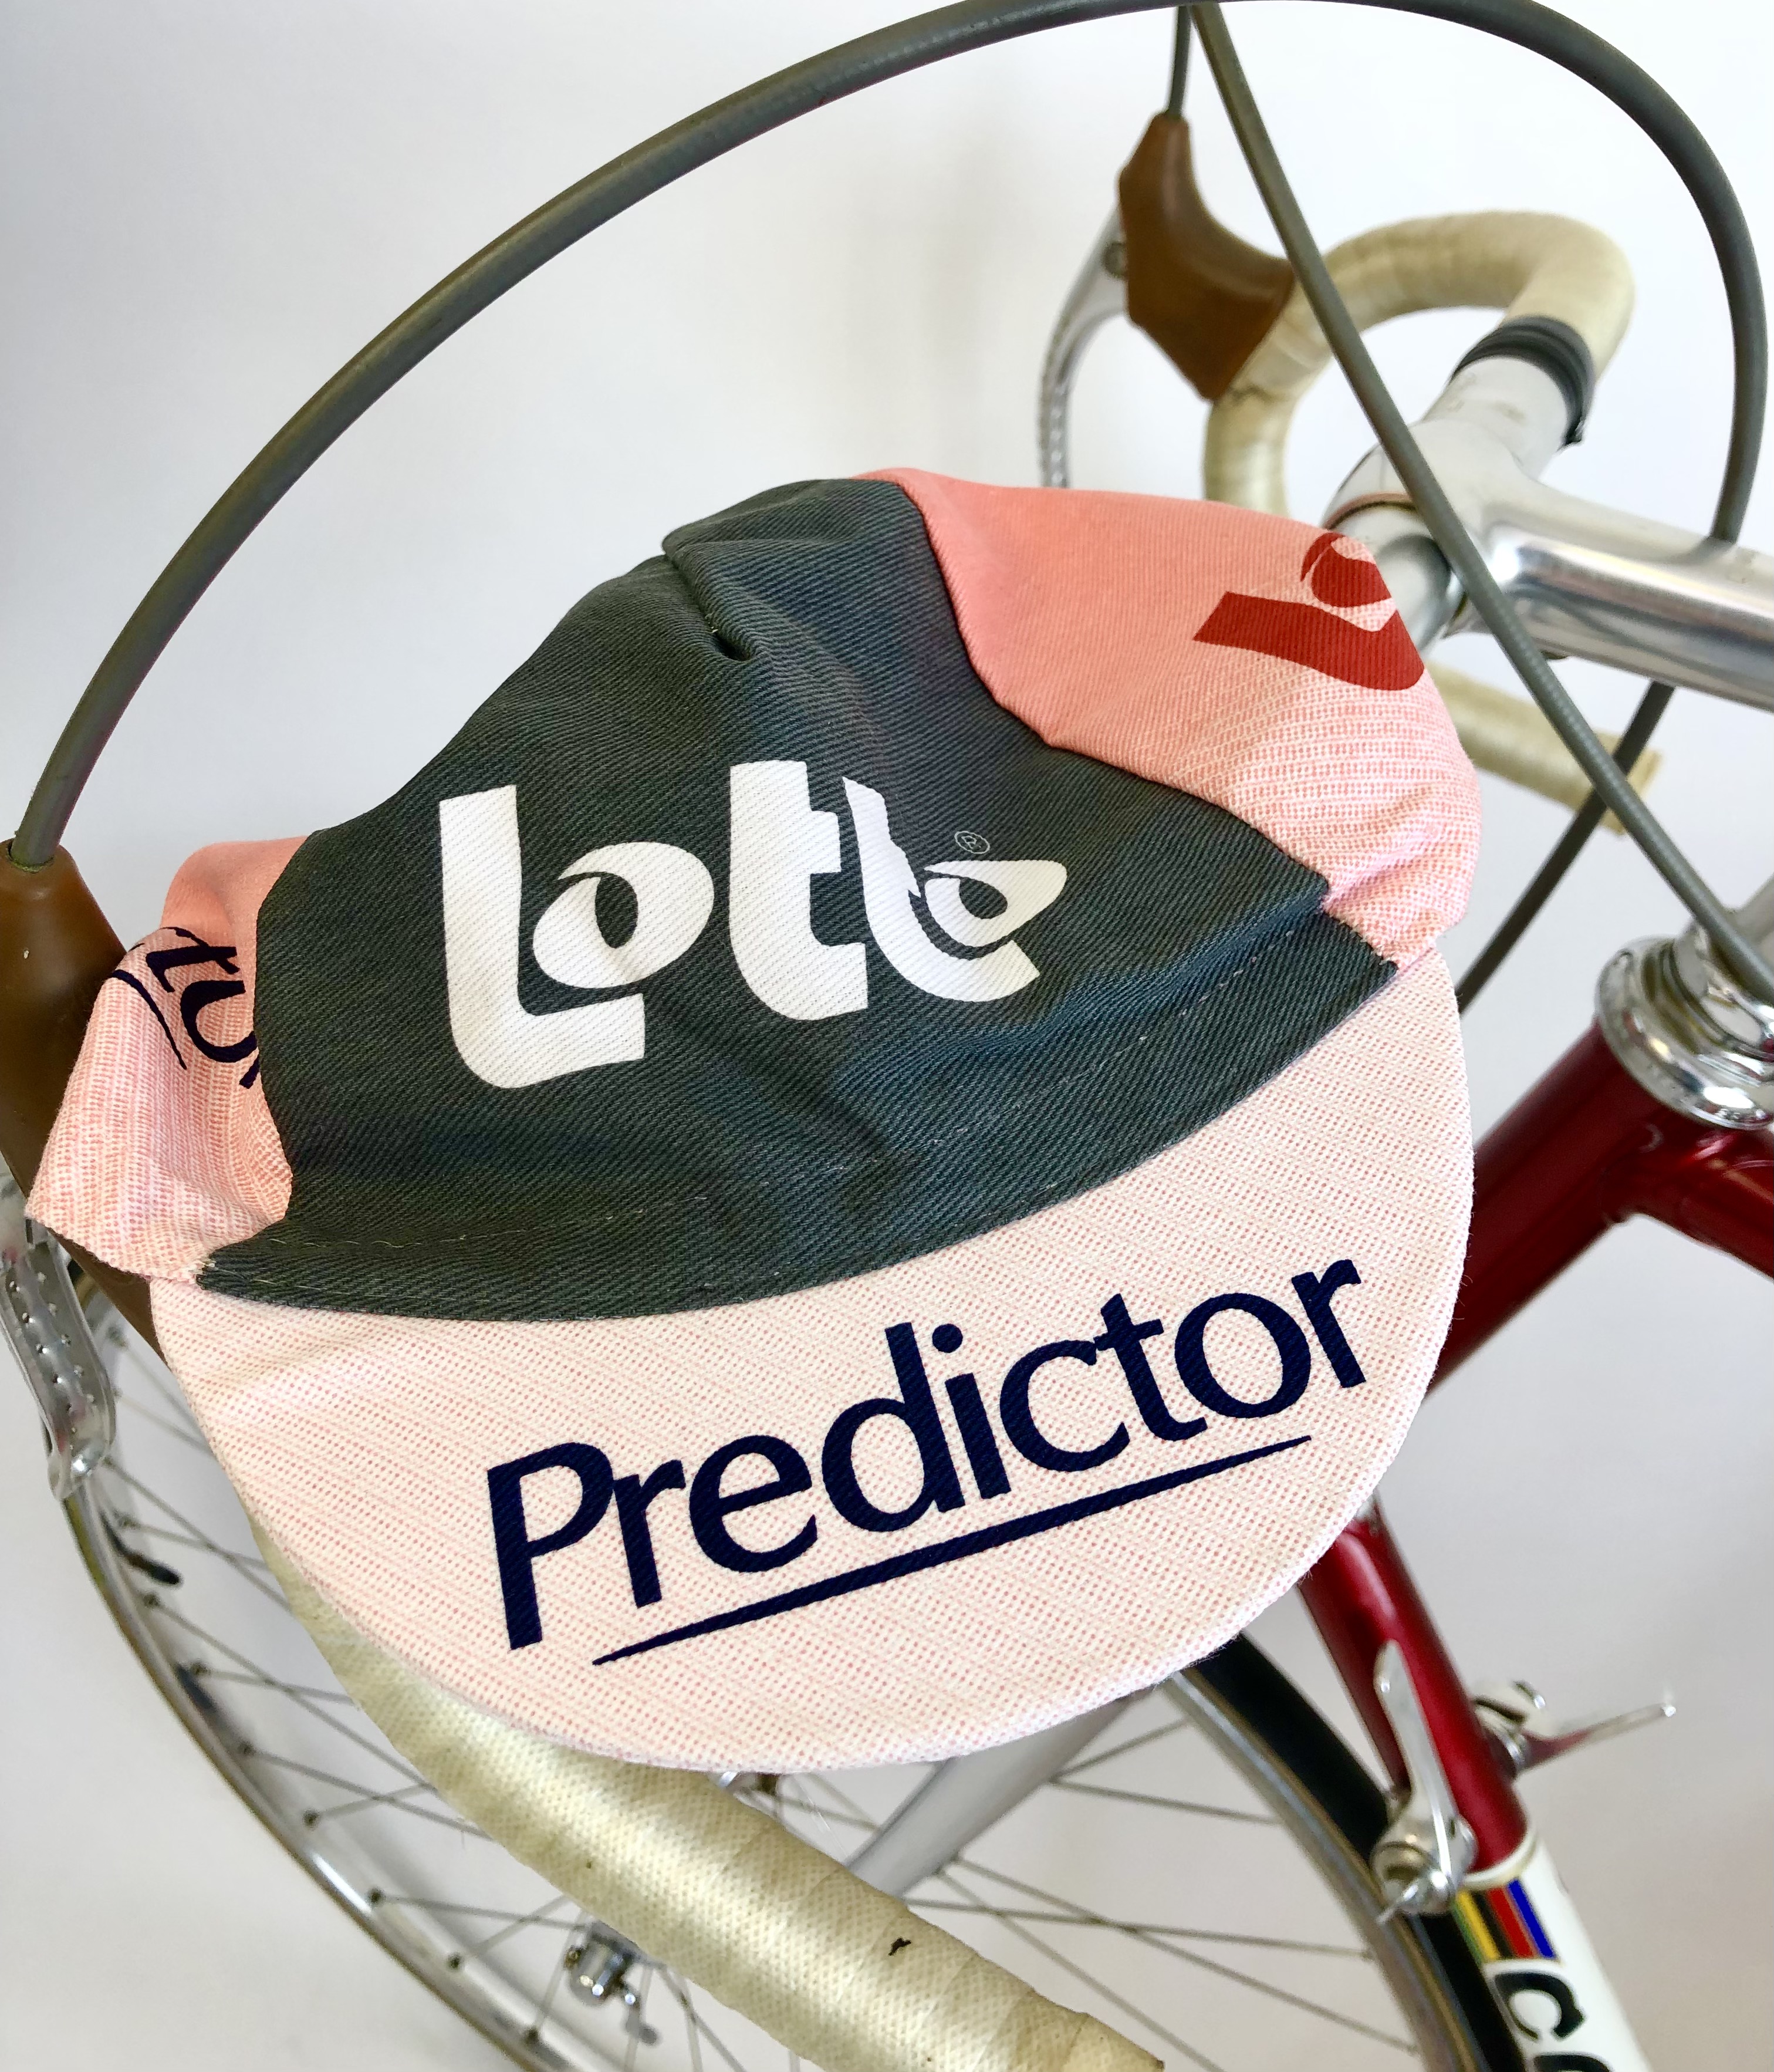 La Casquette Team  Lotto- Predictor